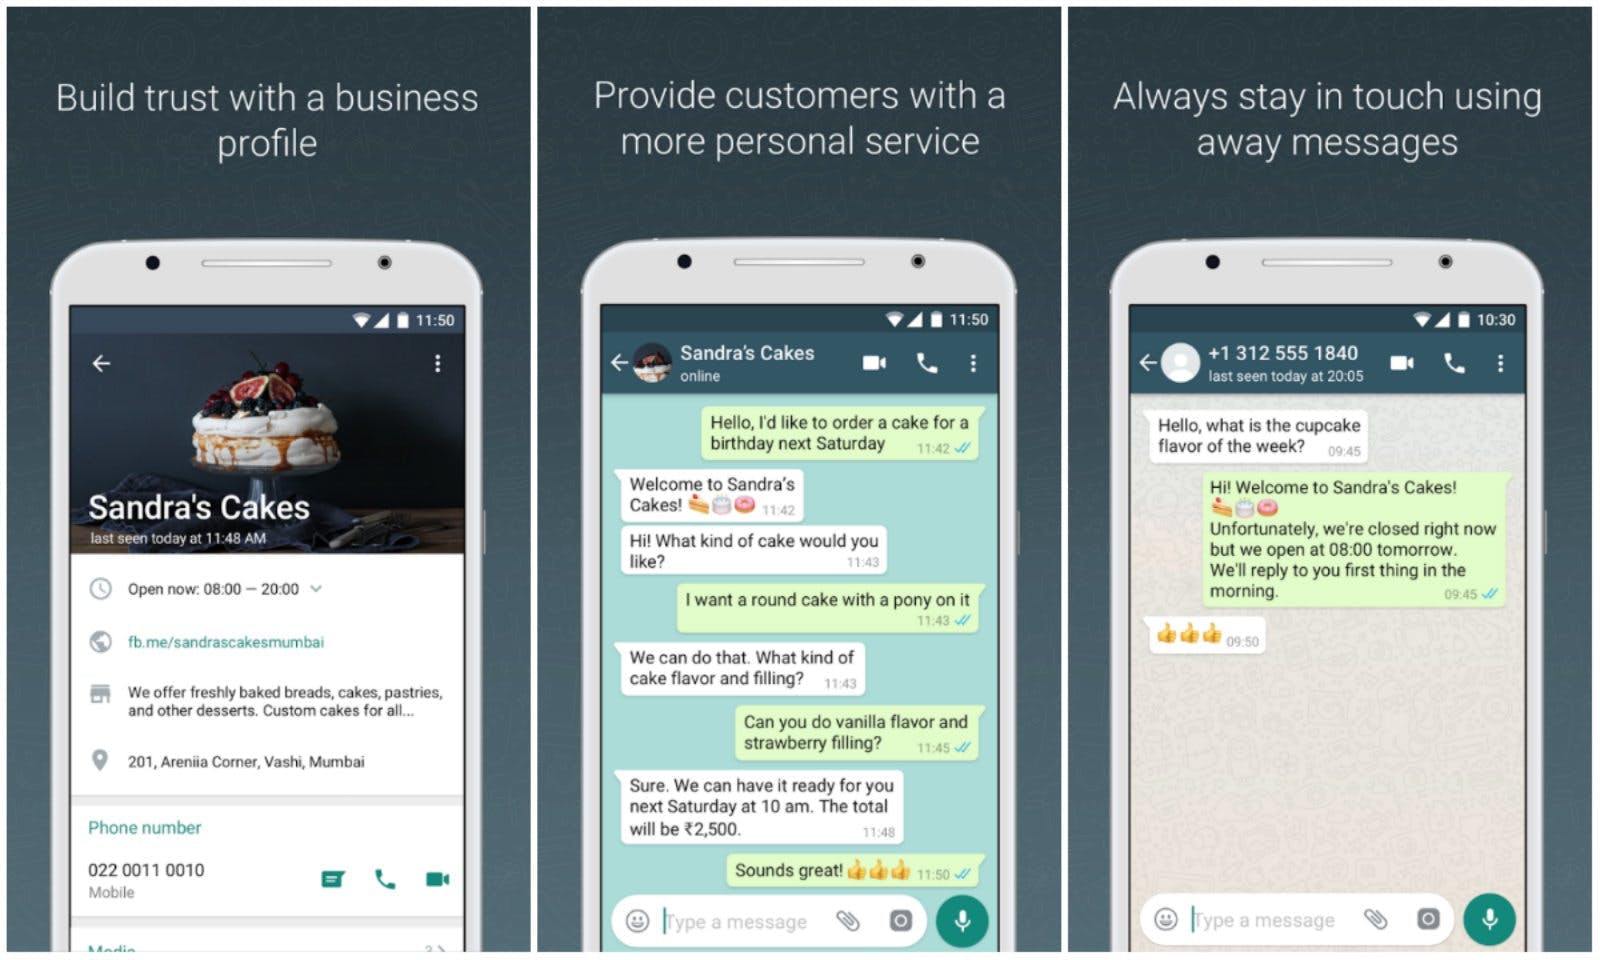 Exemple de fil de discussion WhatsApp entre une entreprise, Sandra's Cakes et un client